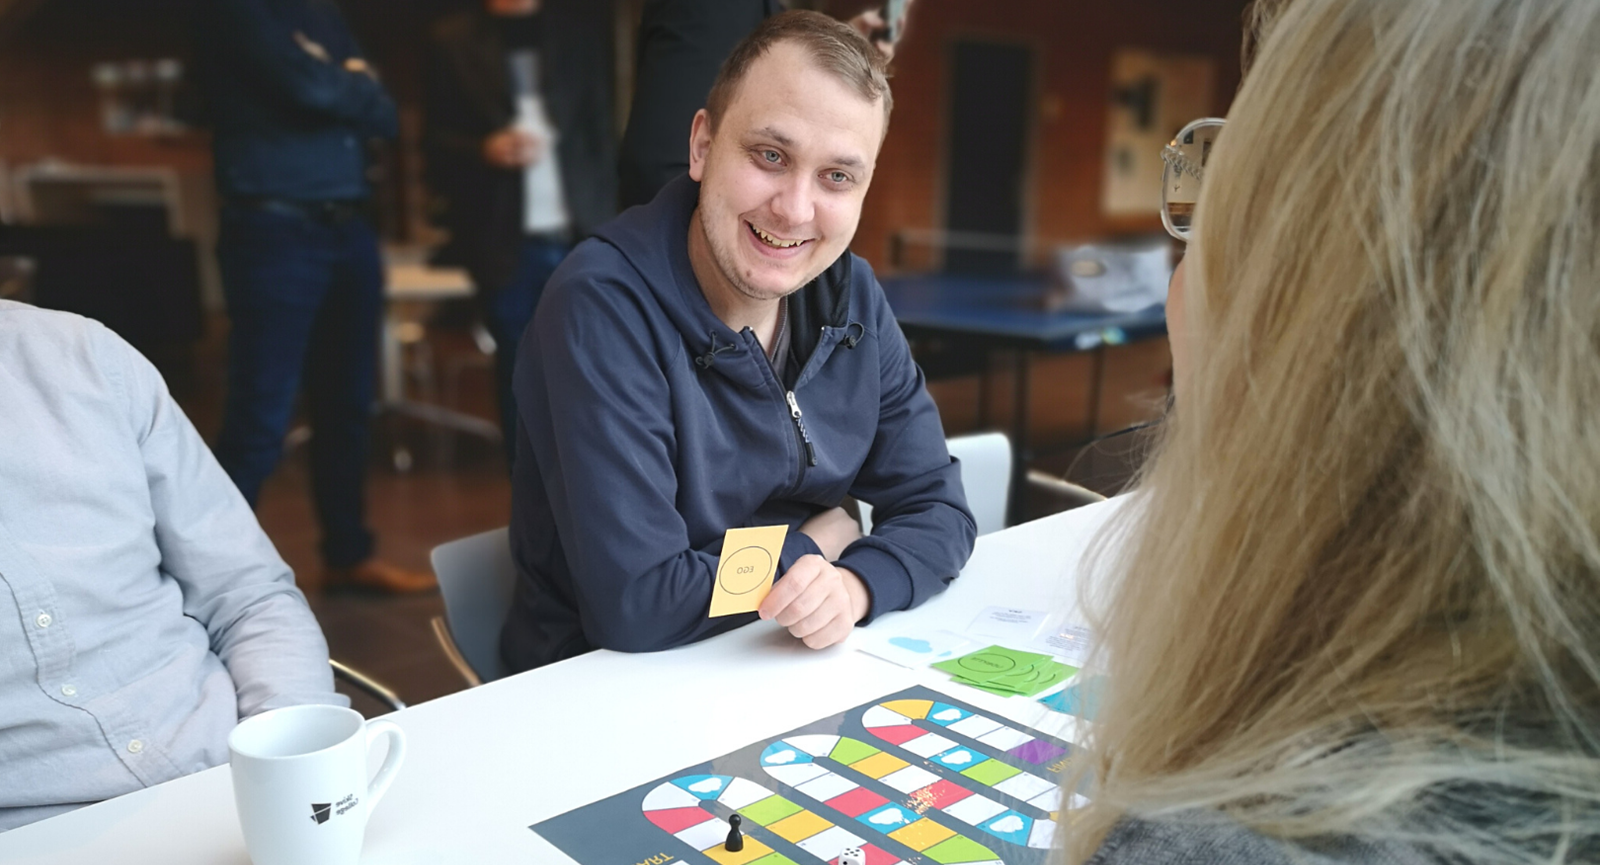 E-handels studerende i Skive spiller refleksionsspil og smiler til en kvindelig medstuderende med et kort i hånden